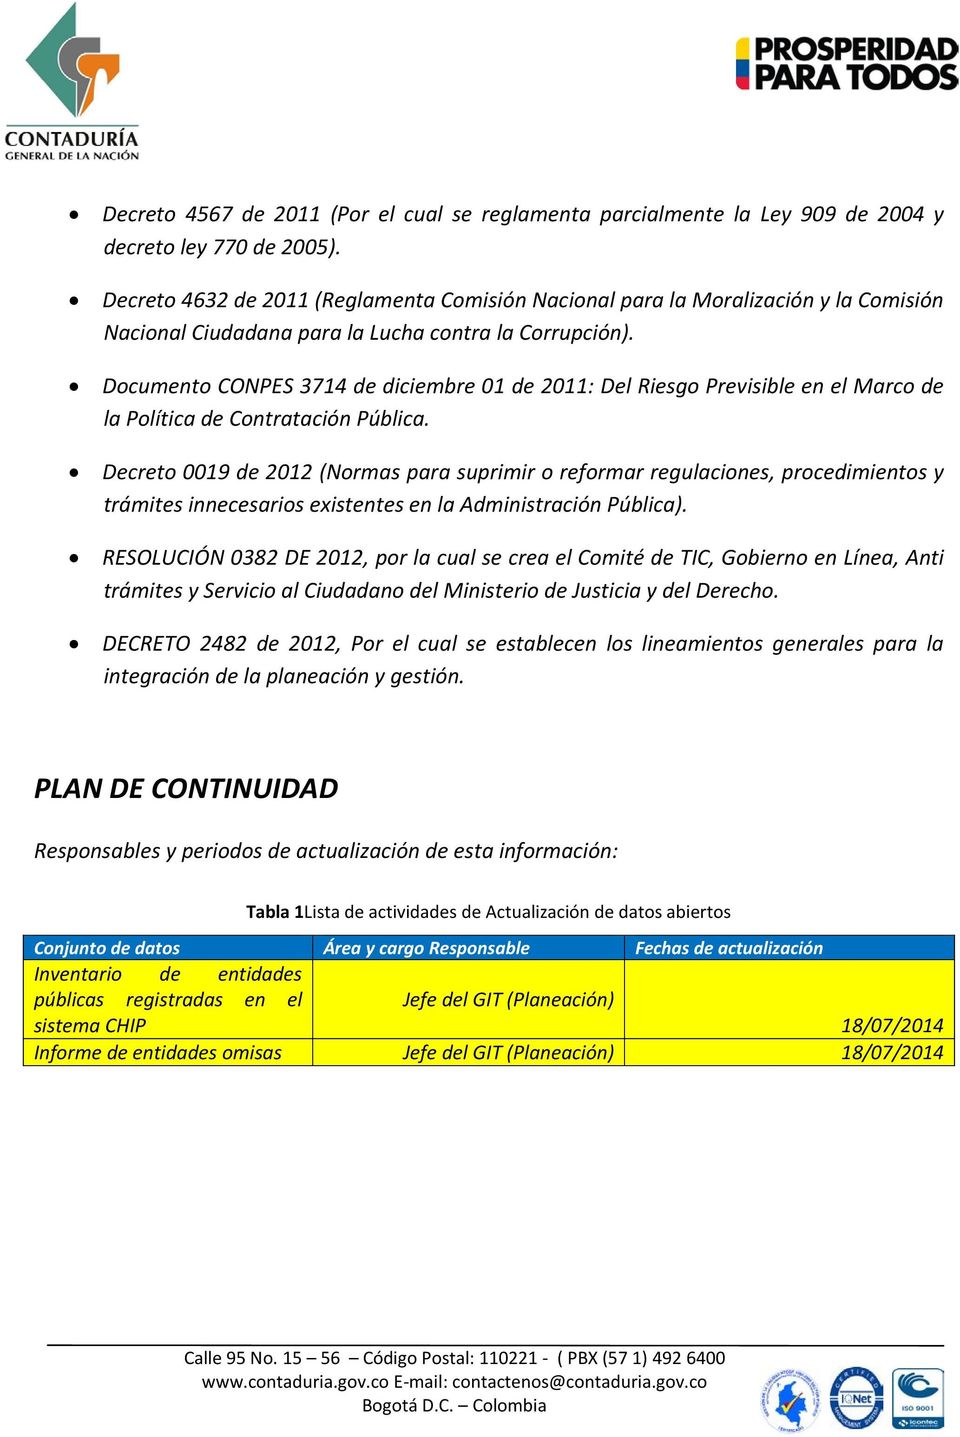 Documento CONPES 3714 diciembre 01 2011: Del Riesgo Previsible en el Marco la Política Contratación Pública.